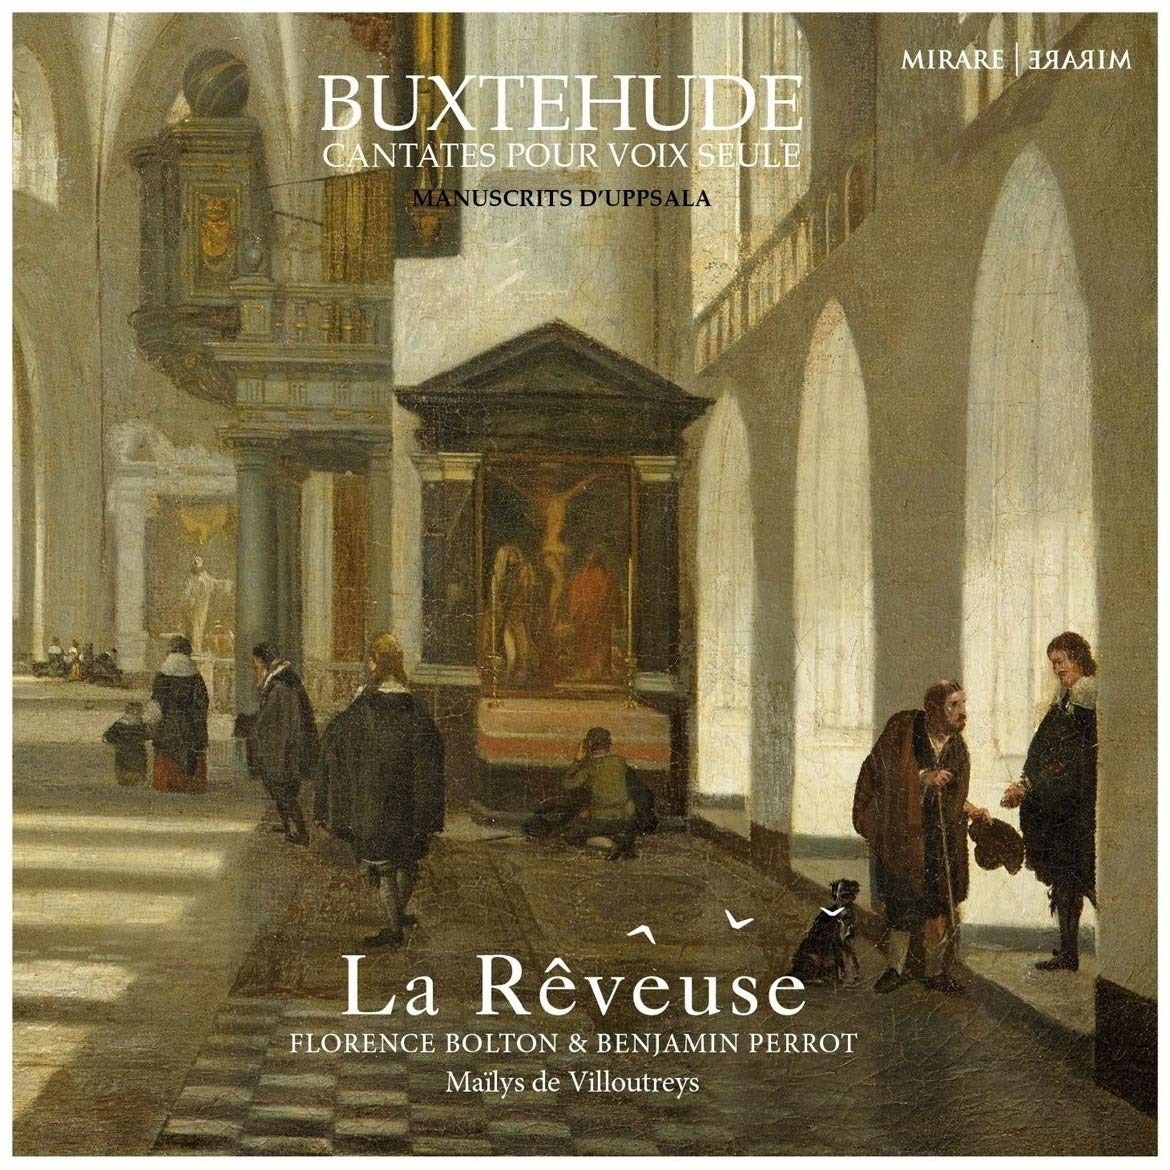 La Reveuse, Benjamin Perrot, Florence Bolton - Buxtehude: Cantates pour voix seule - Manuscrits d’Uppsala (2020) [FLAC 24bit/96kHz]